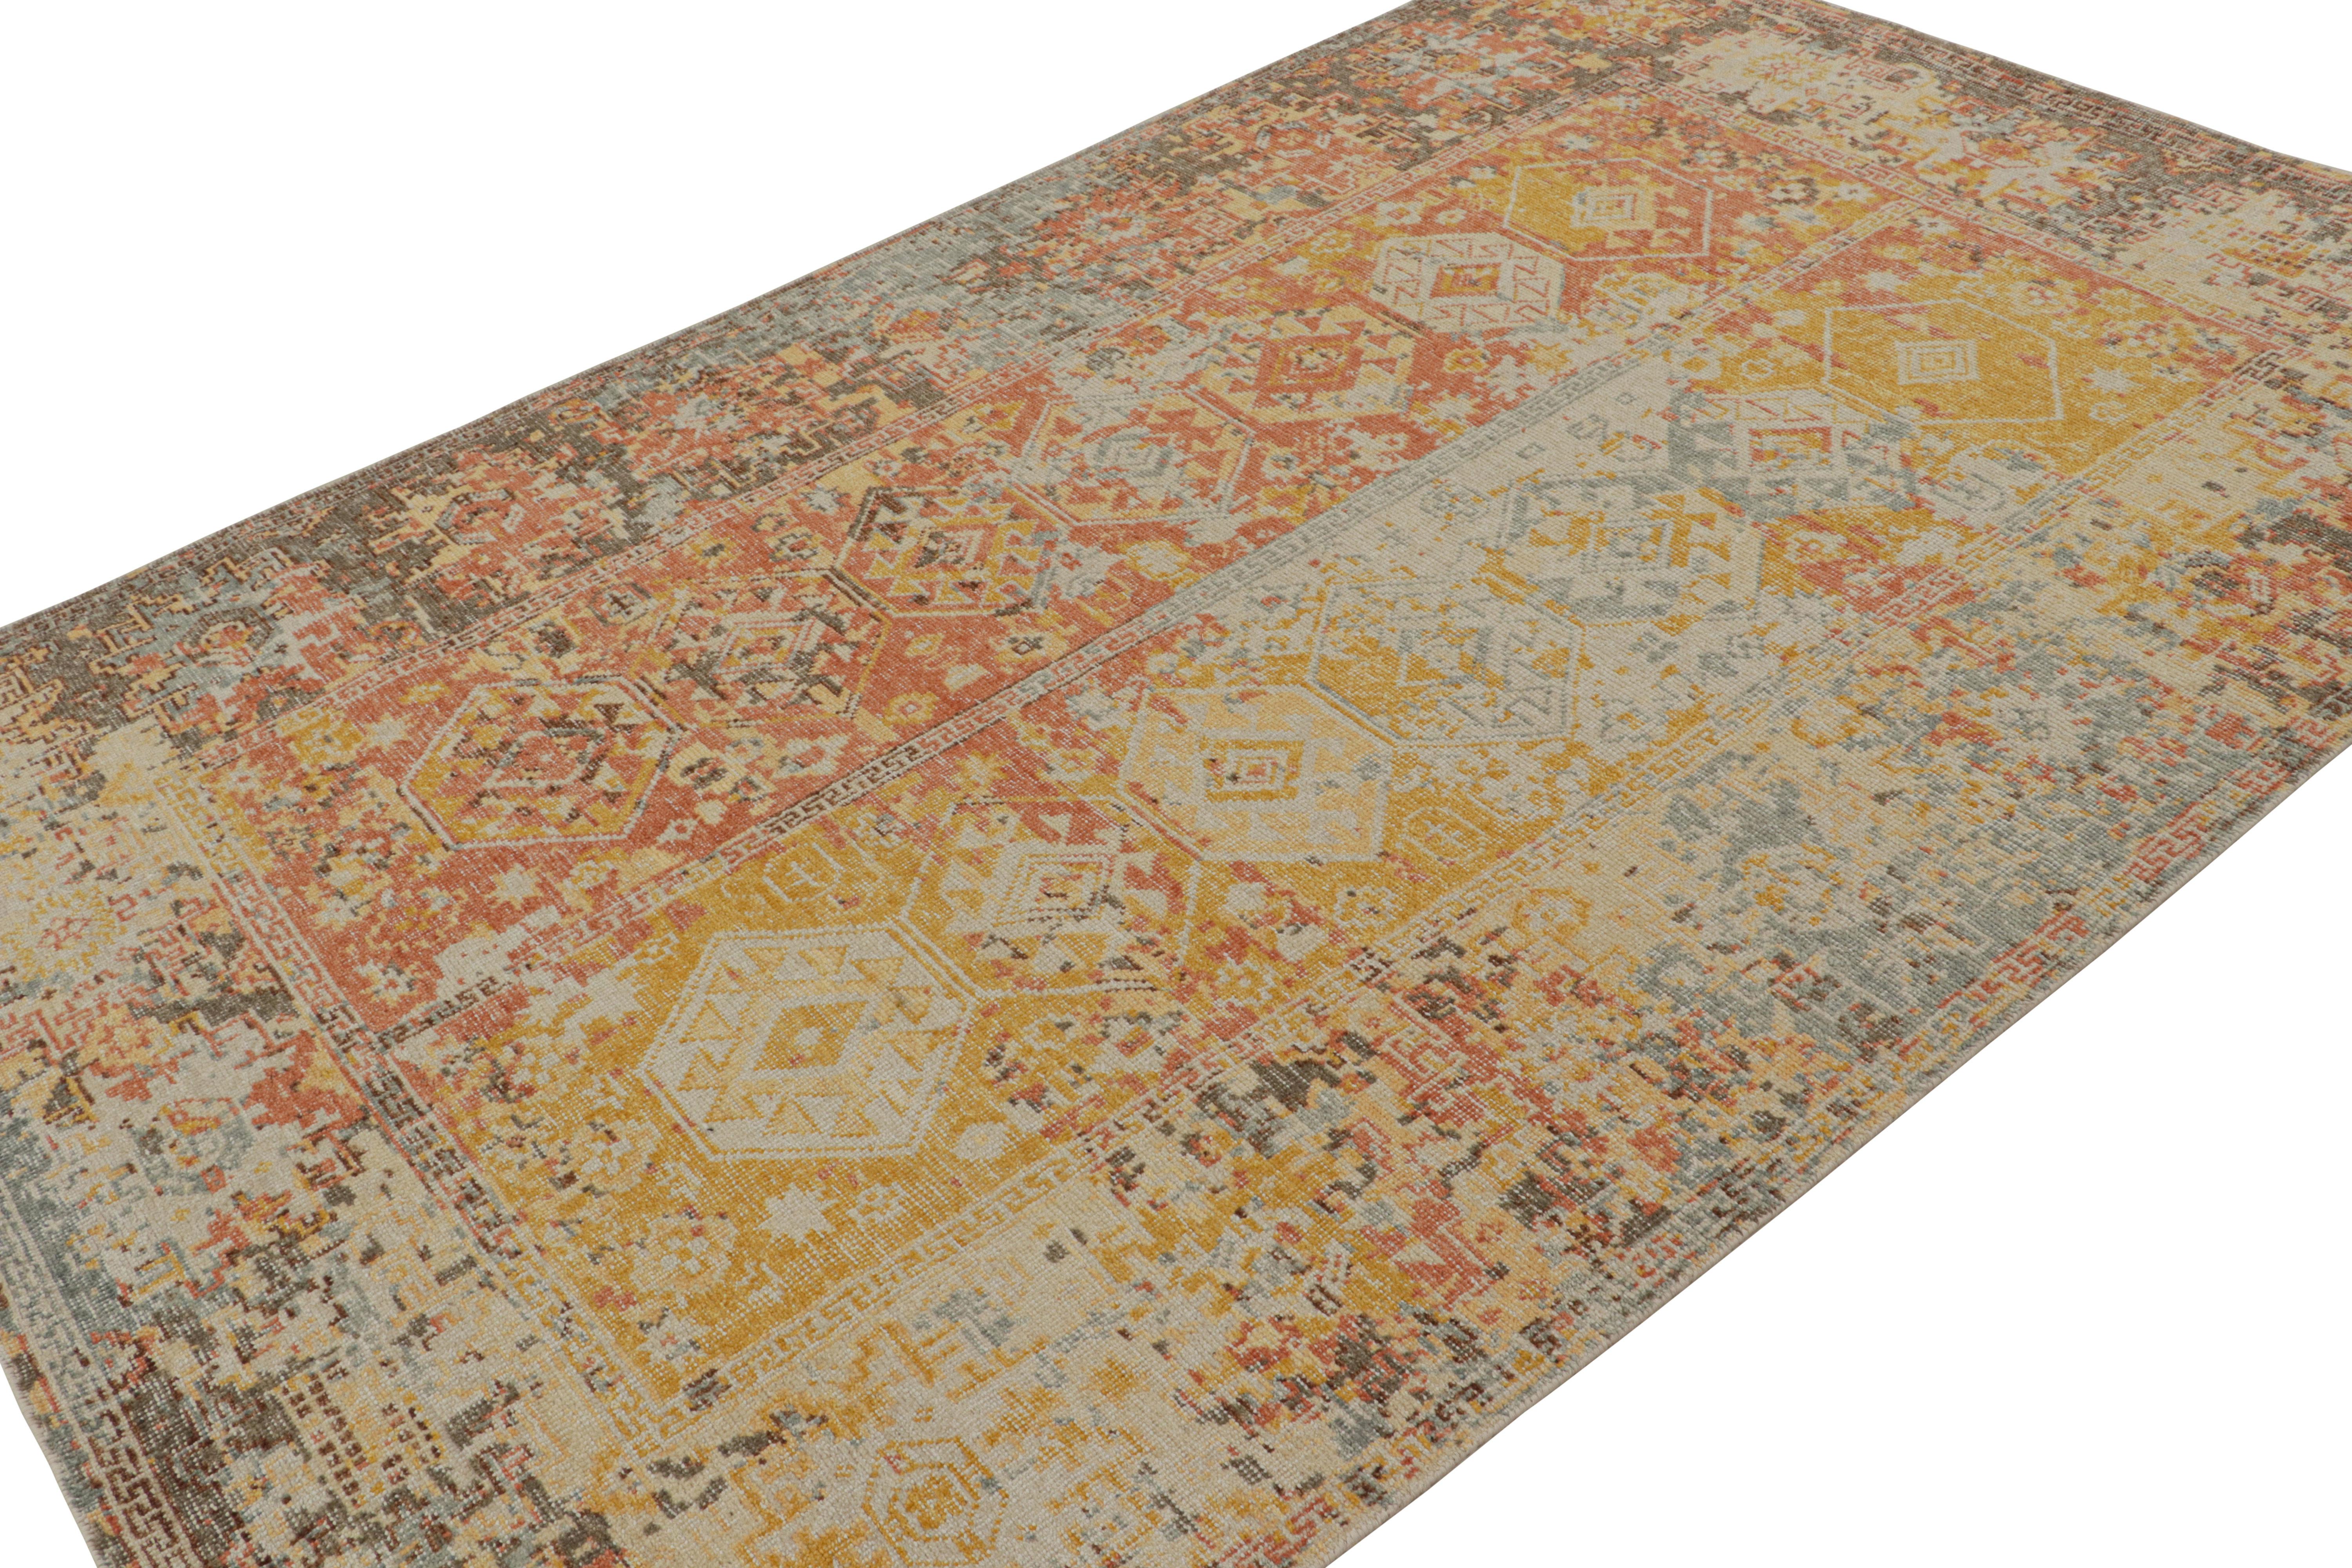 Noué à la main en laine, ce tapis contemporain 6x9 présente une approche abstraite picturale des motifs classiques des tapis tribaux. Il s'agit d'un nouvel ajout à la collection Homage. 

Sur le Design : 

Nouveau venu dans la gamme de tapis faits